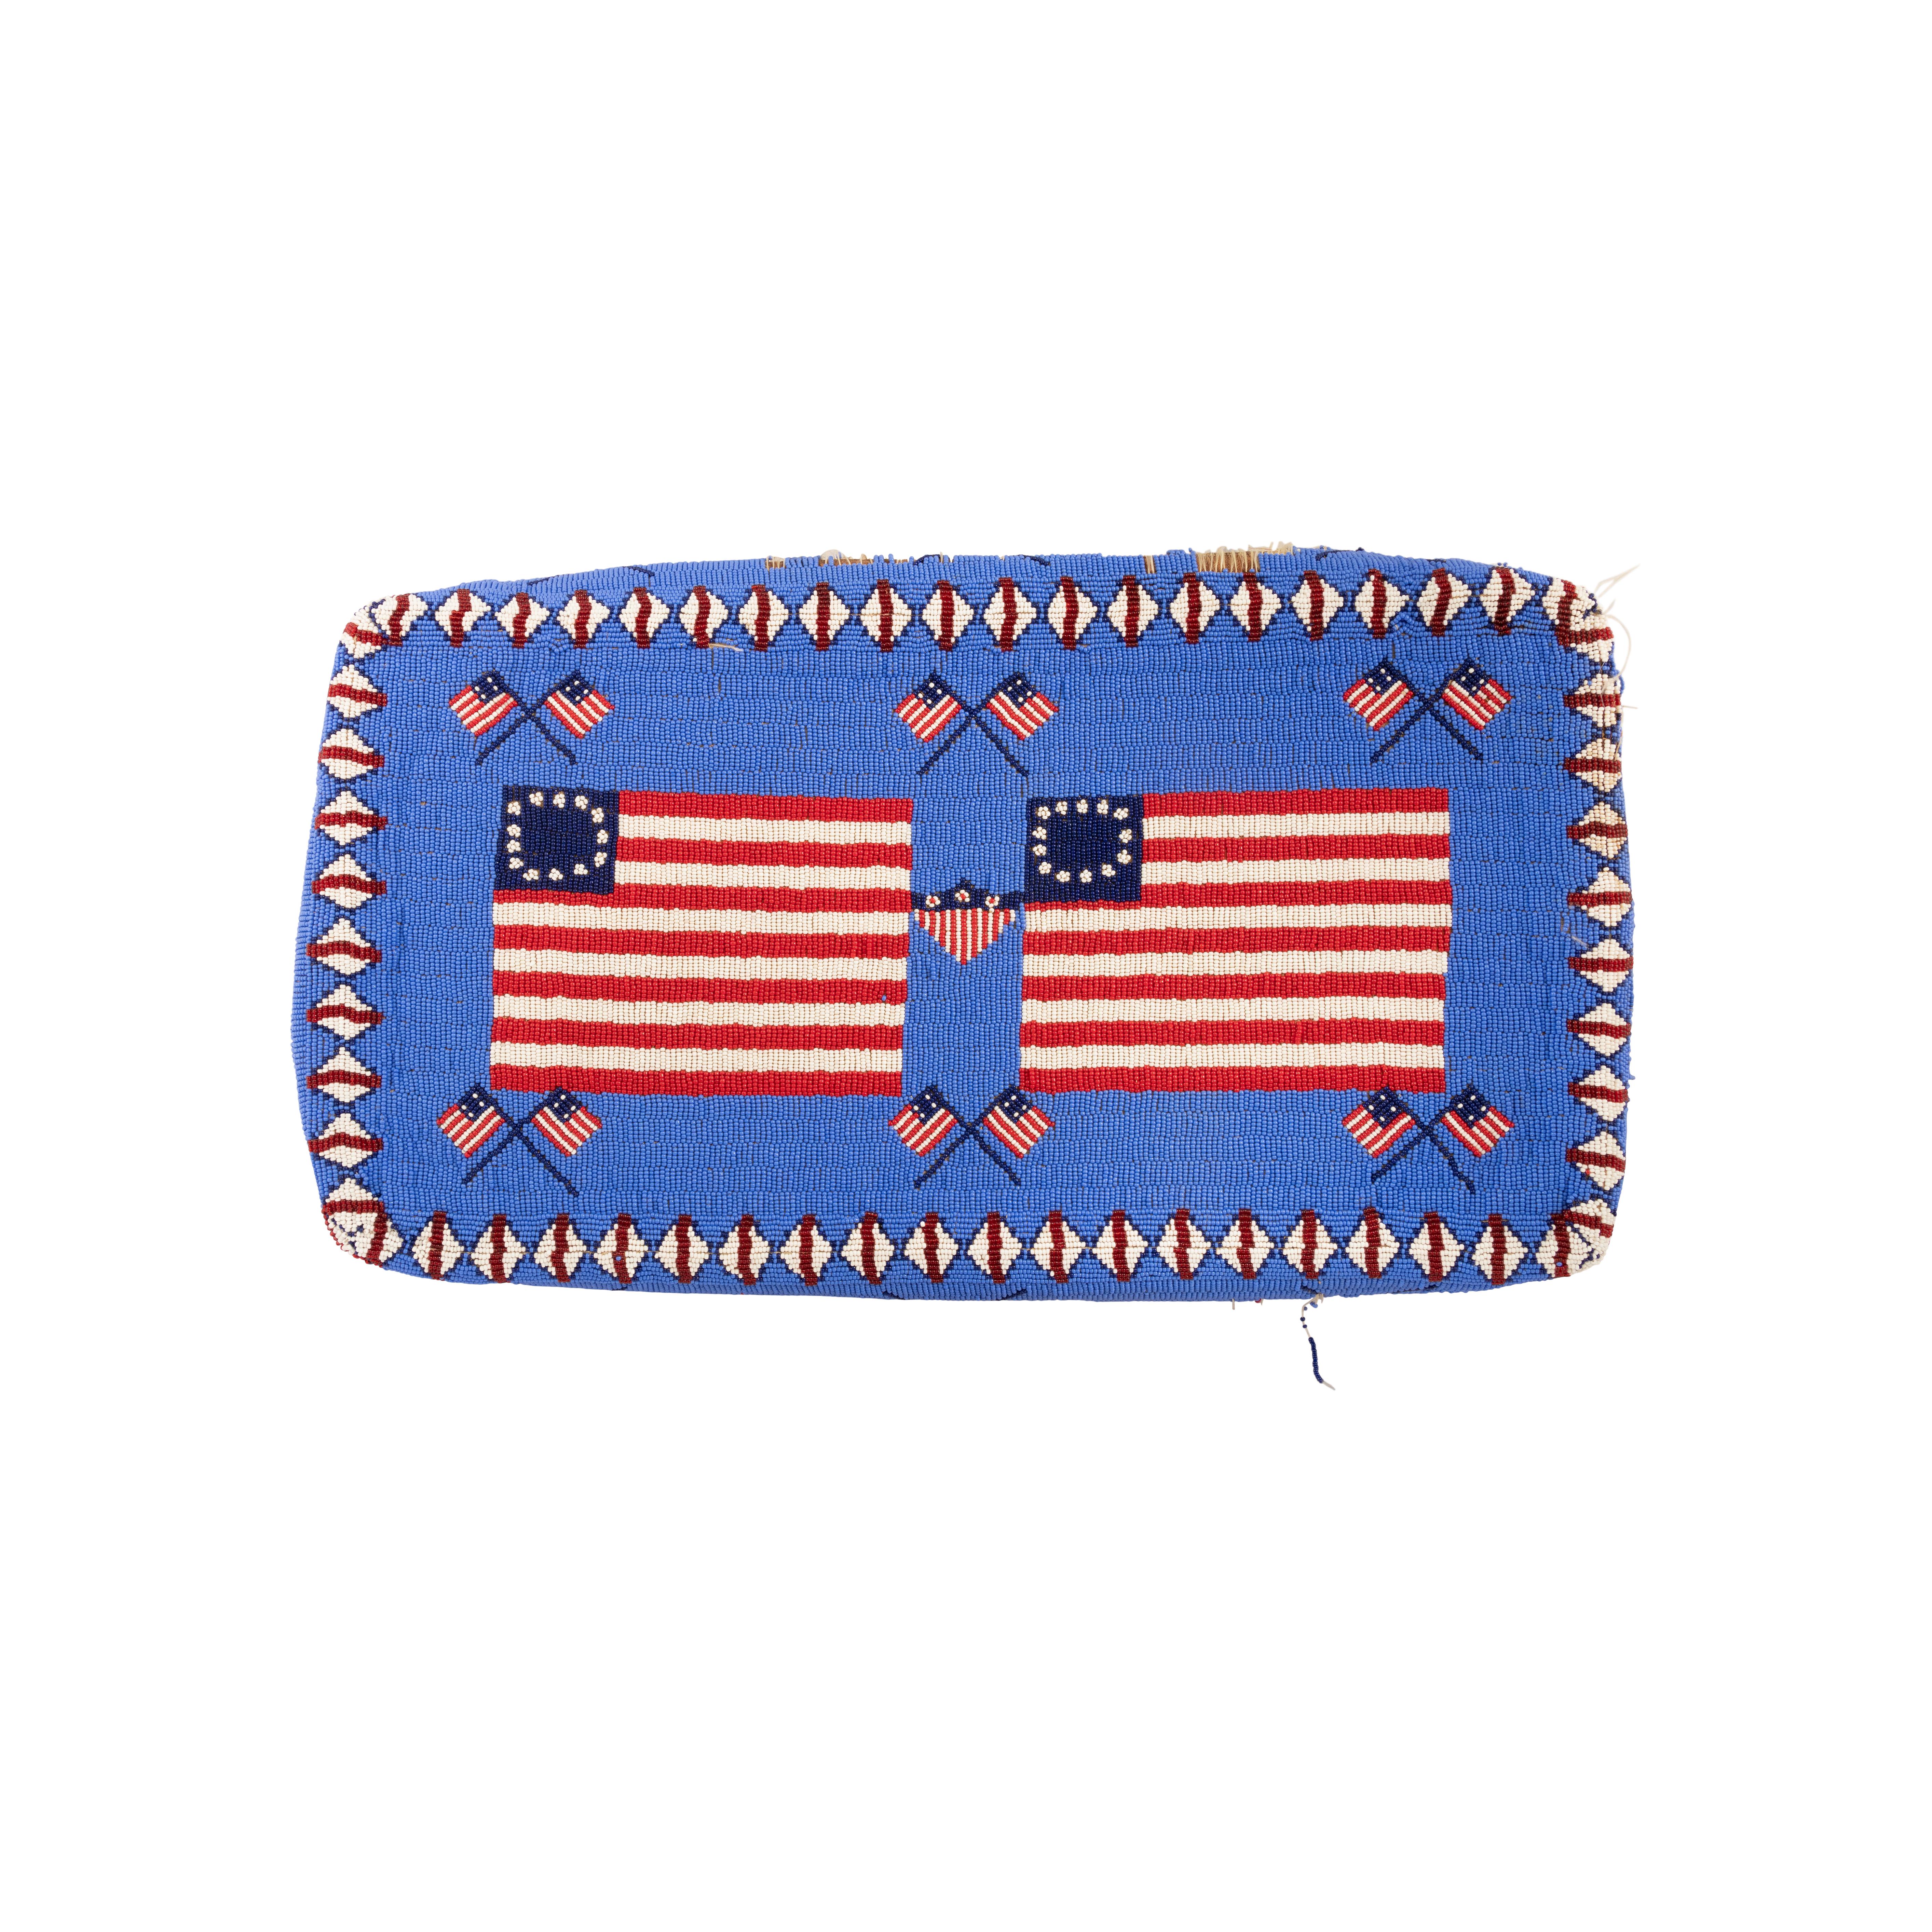 Patriotische indianische Sioux-Perlentasche für den Arzt. 62 amerikanische Flaggen und Wappen. Große Arzttasche; Sioux Perlen. Stammt von einem Handelsposten in South Dakota; Schätzung erste Hälfte 20. Jahrhundert, verkauft in den 1970er Jahren für